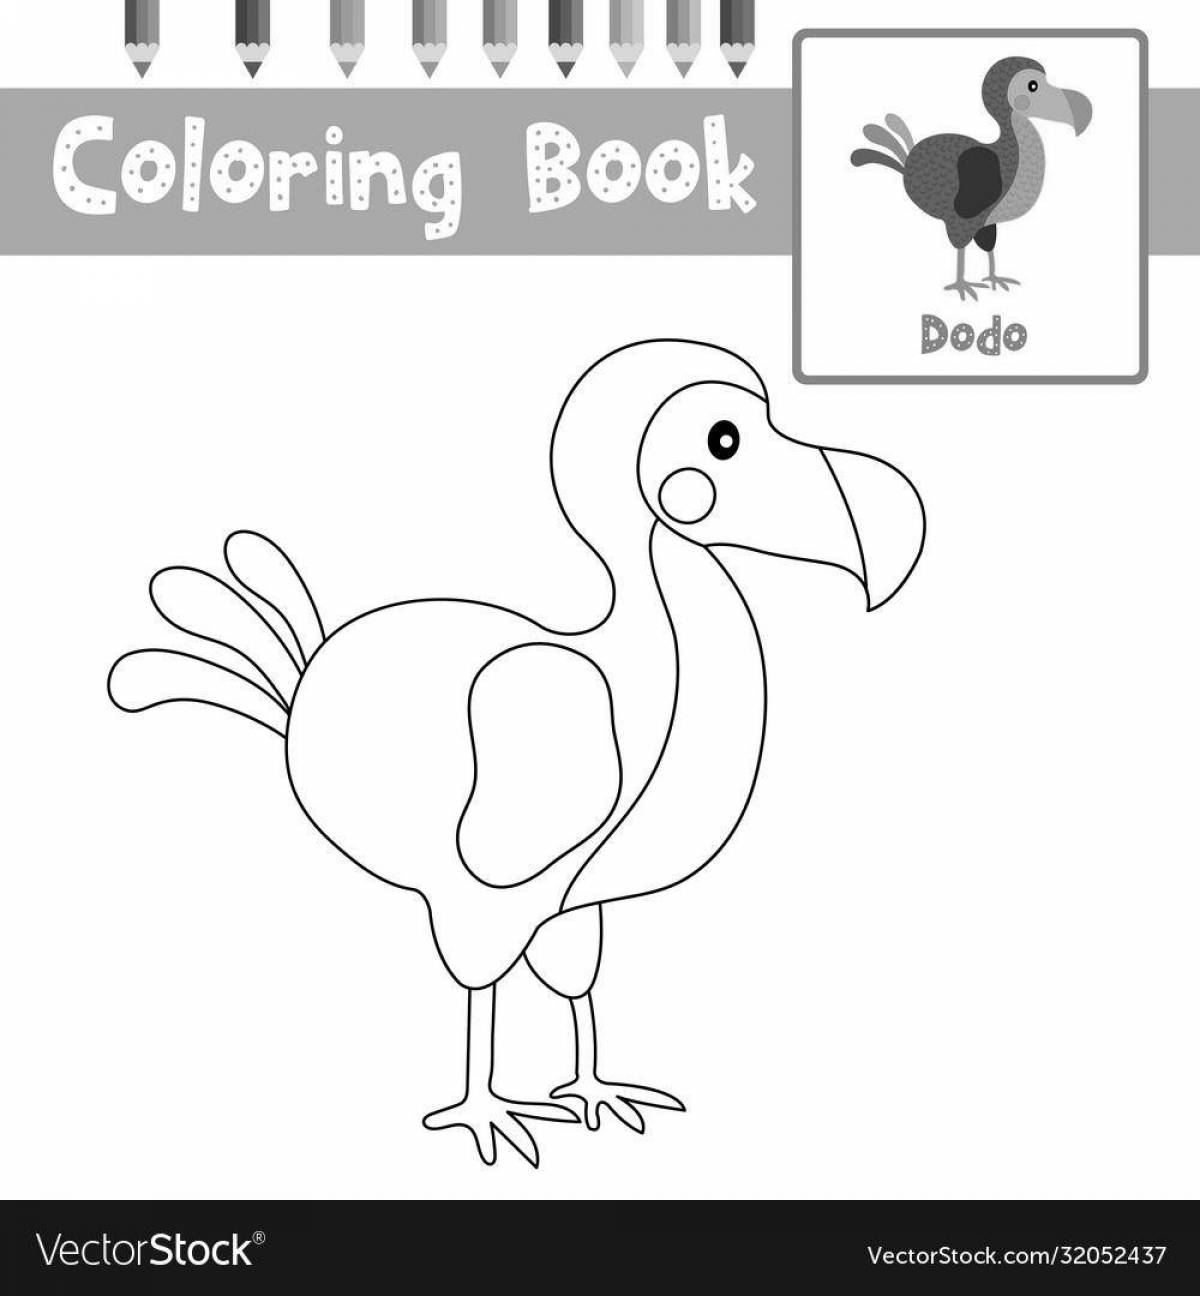 Colorful dodo coloring